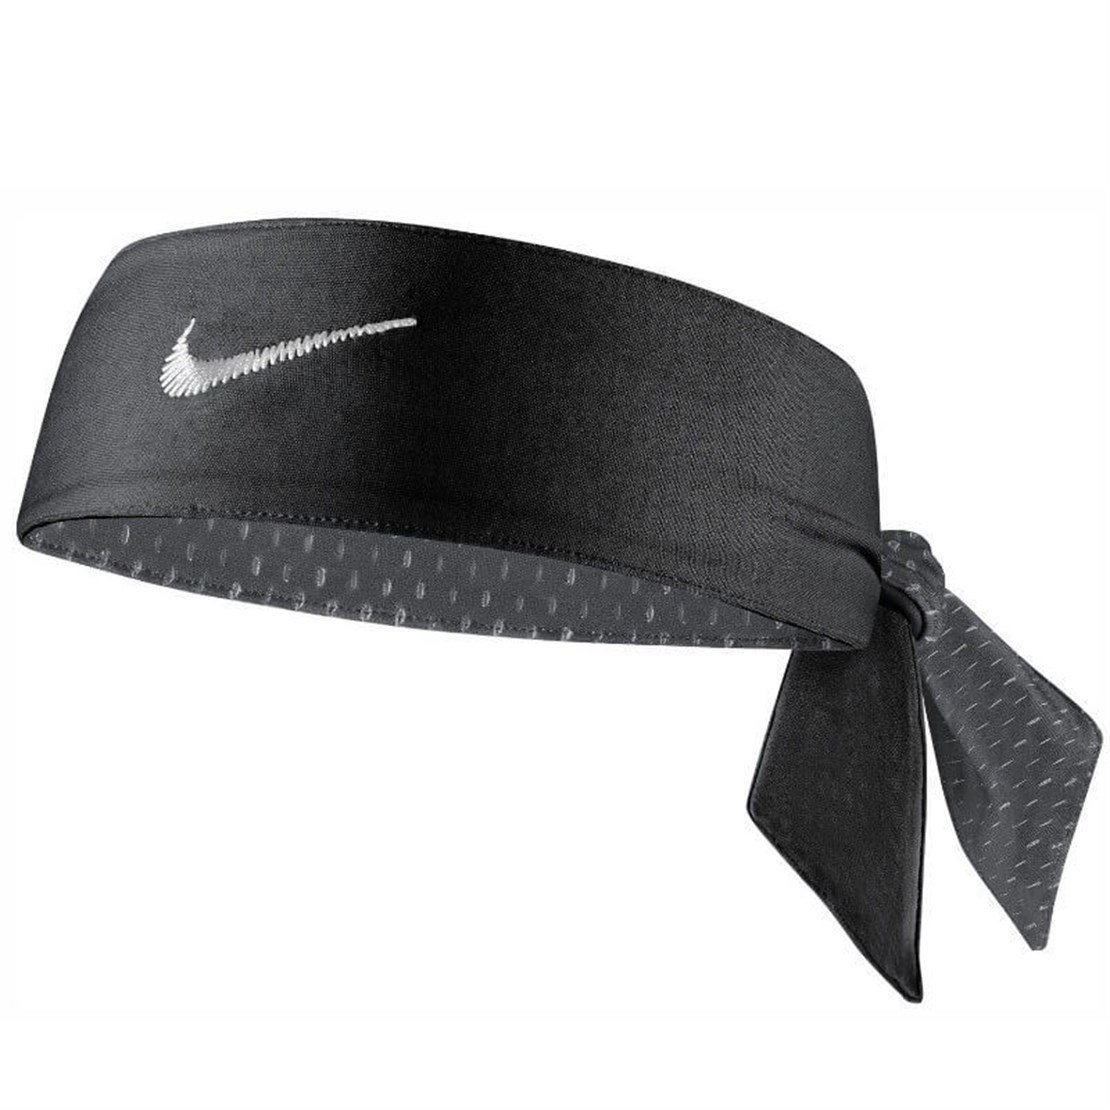 Nike Dri-Fit Head Tie 3.0 Tenis Bandana